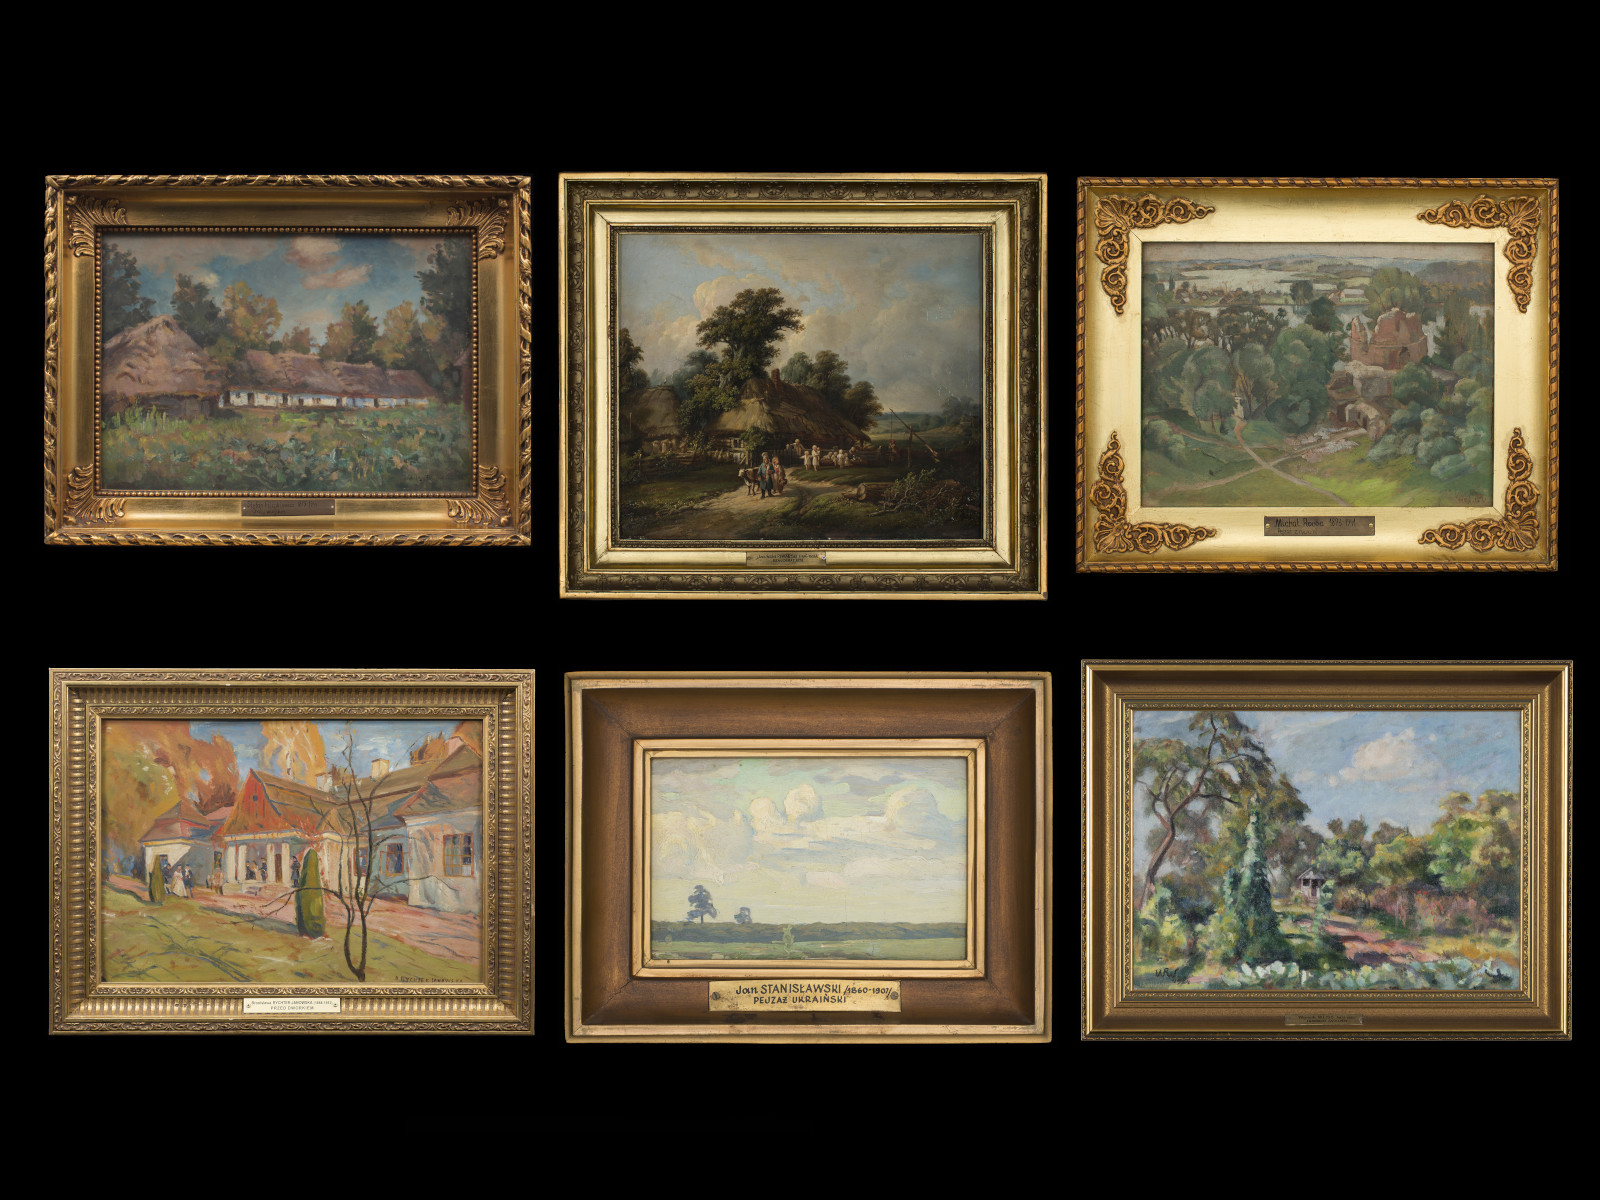 Widok na sześć obrazów w złotych ramach. Obrazy przedstawiają cztery pory roku. Niektóre z obrazów przedstawiają zabudowania w otoczeni zieleni, a niektóre pejzaże.